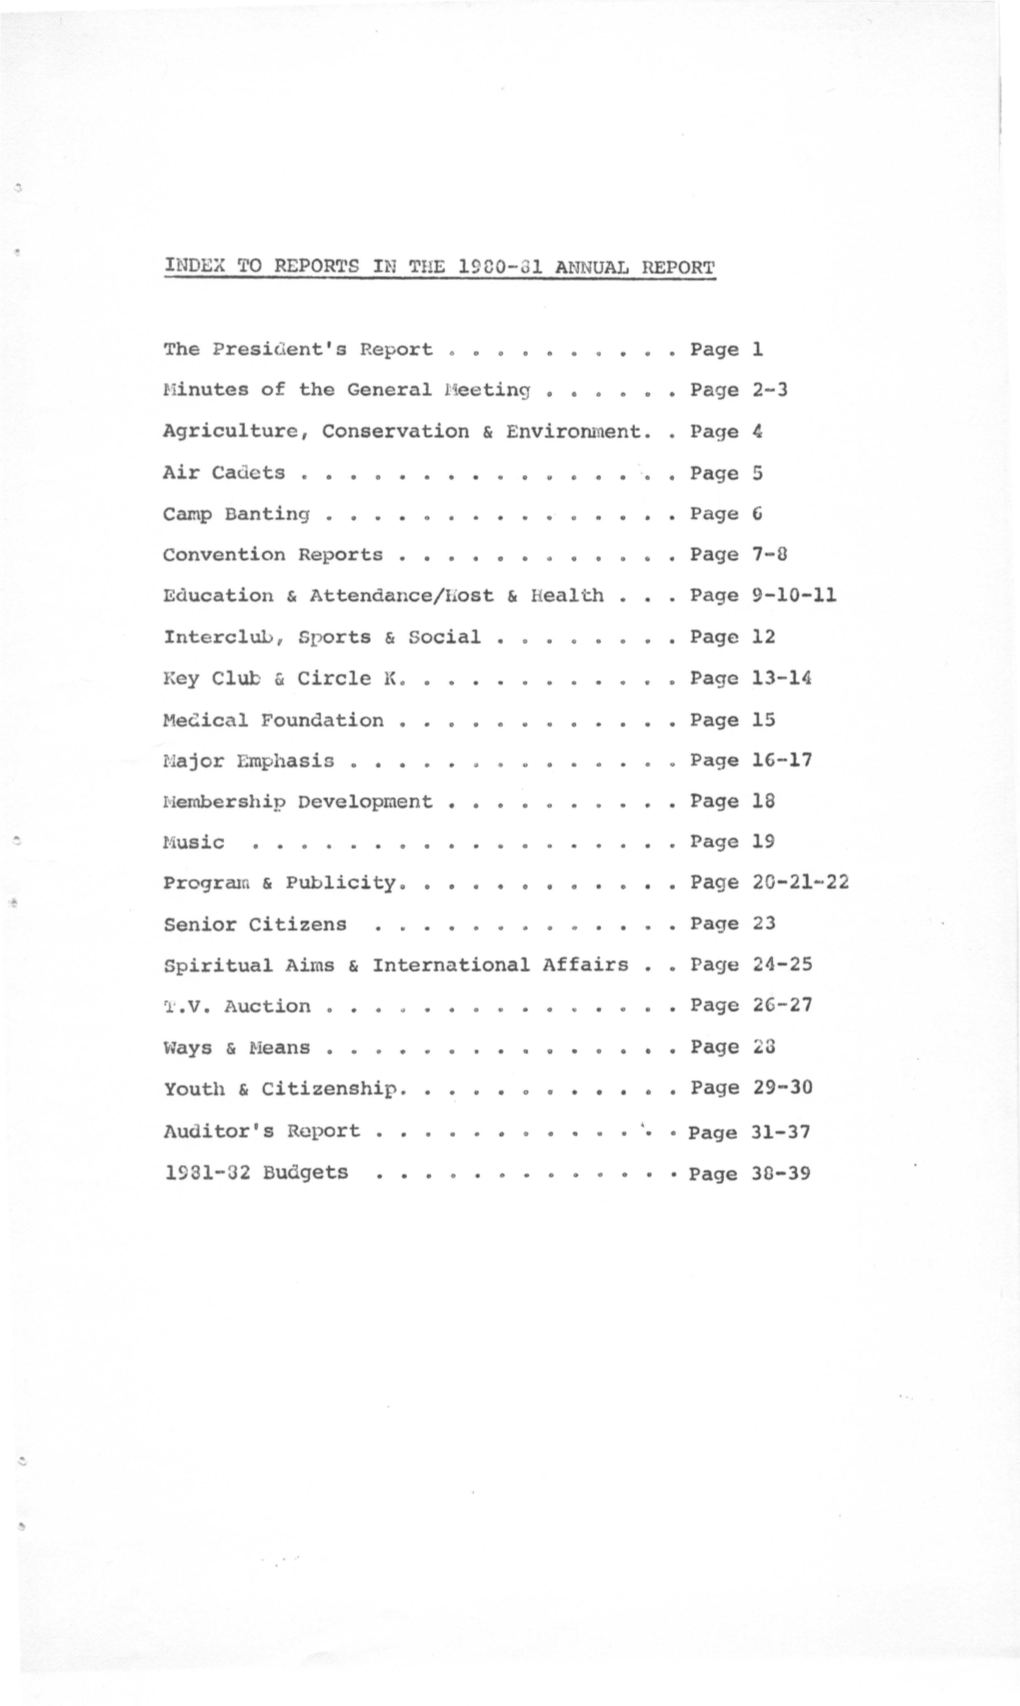 1980-81 C Ross Hacfwen N Dougl.S Legere Jonn J Shane Thomas W